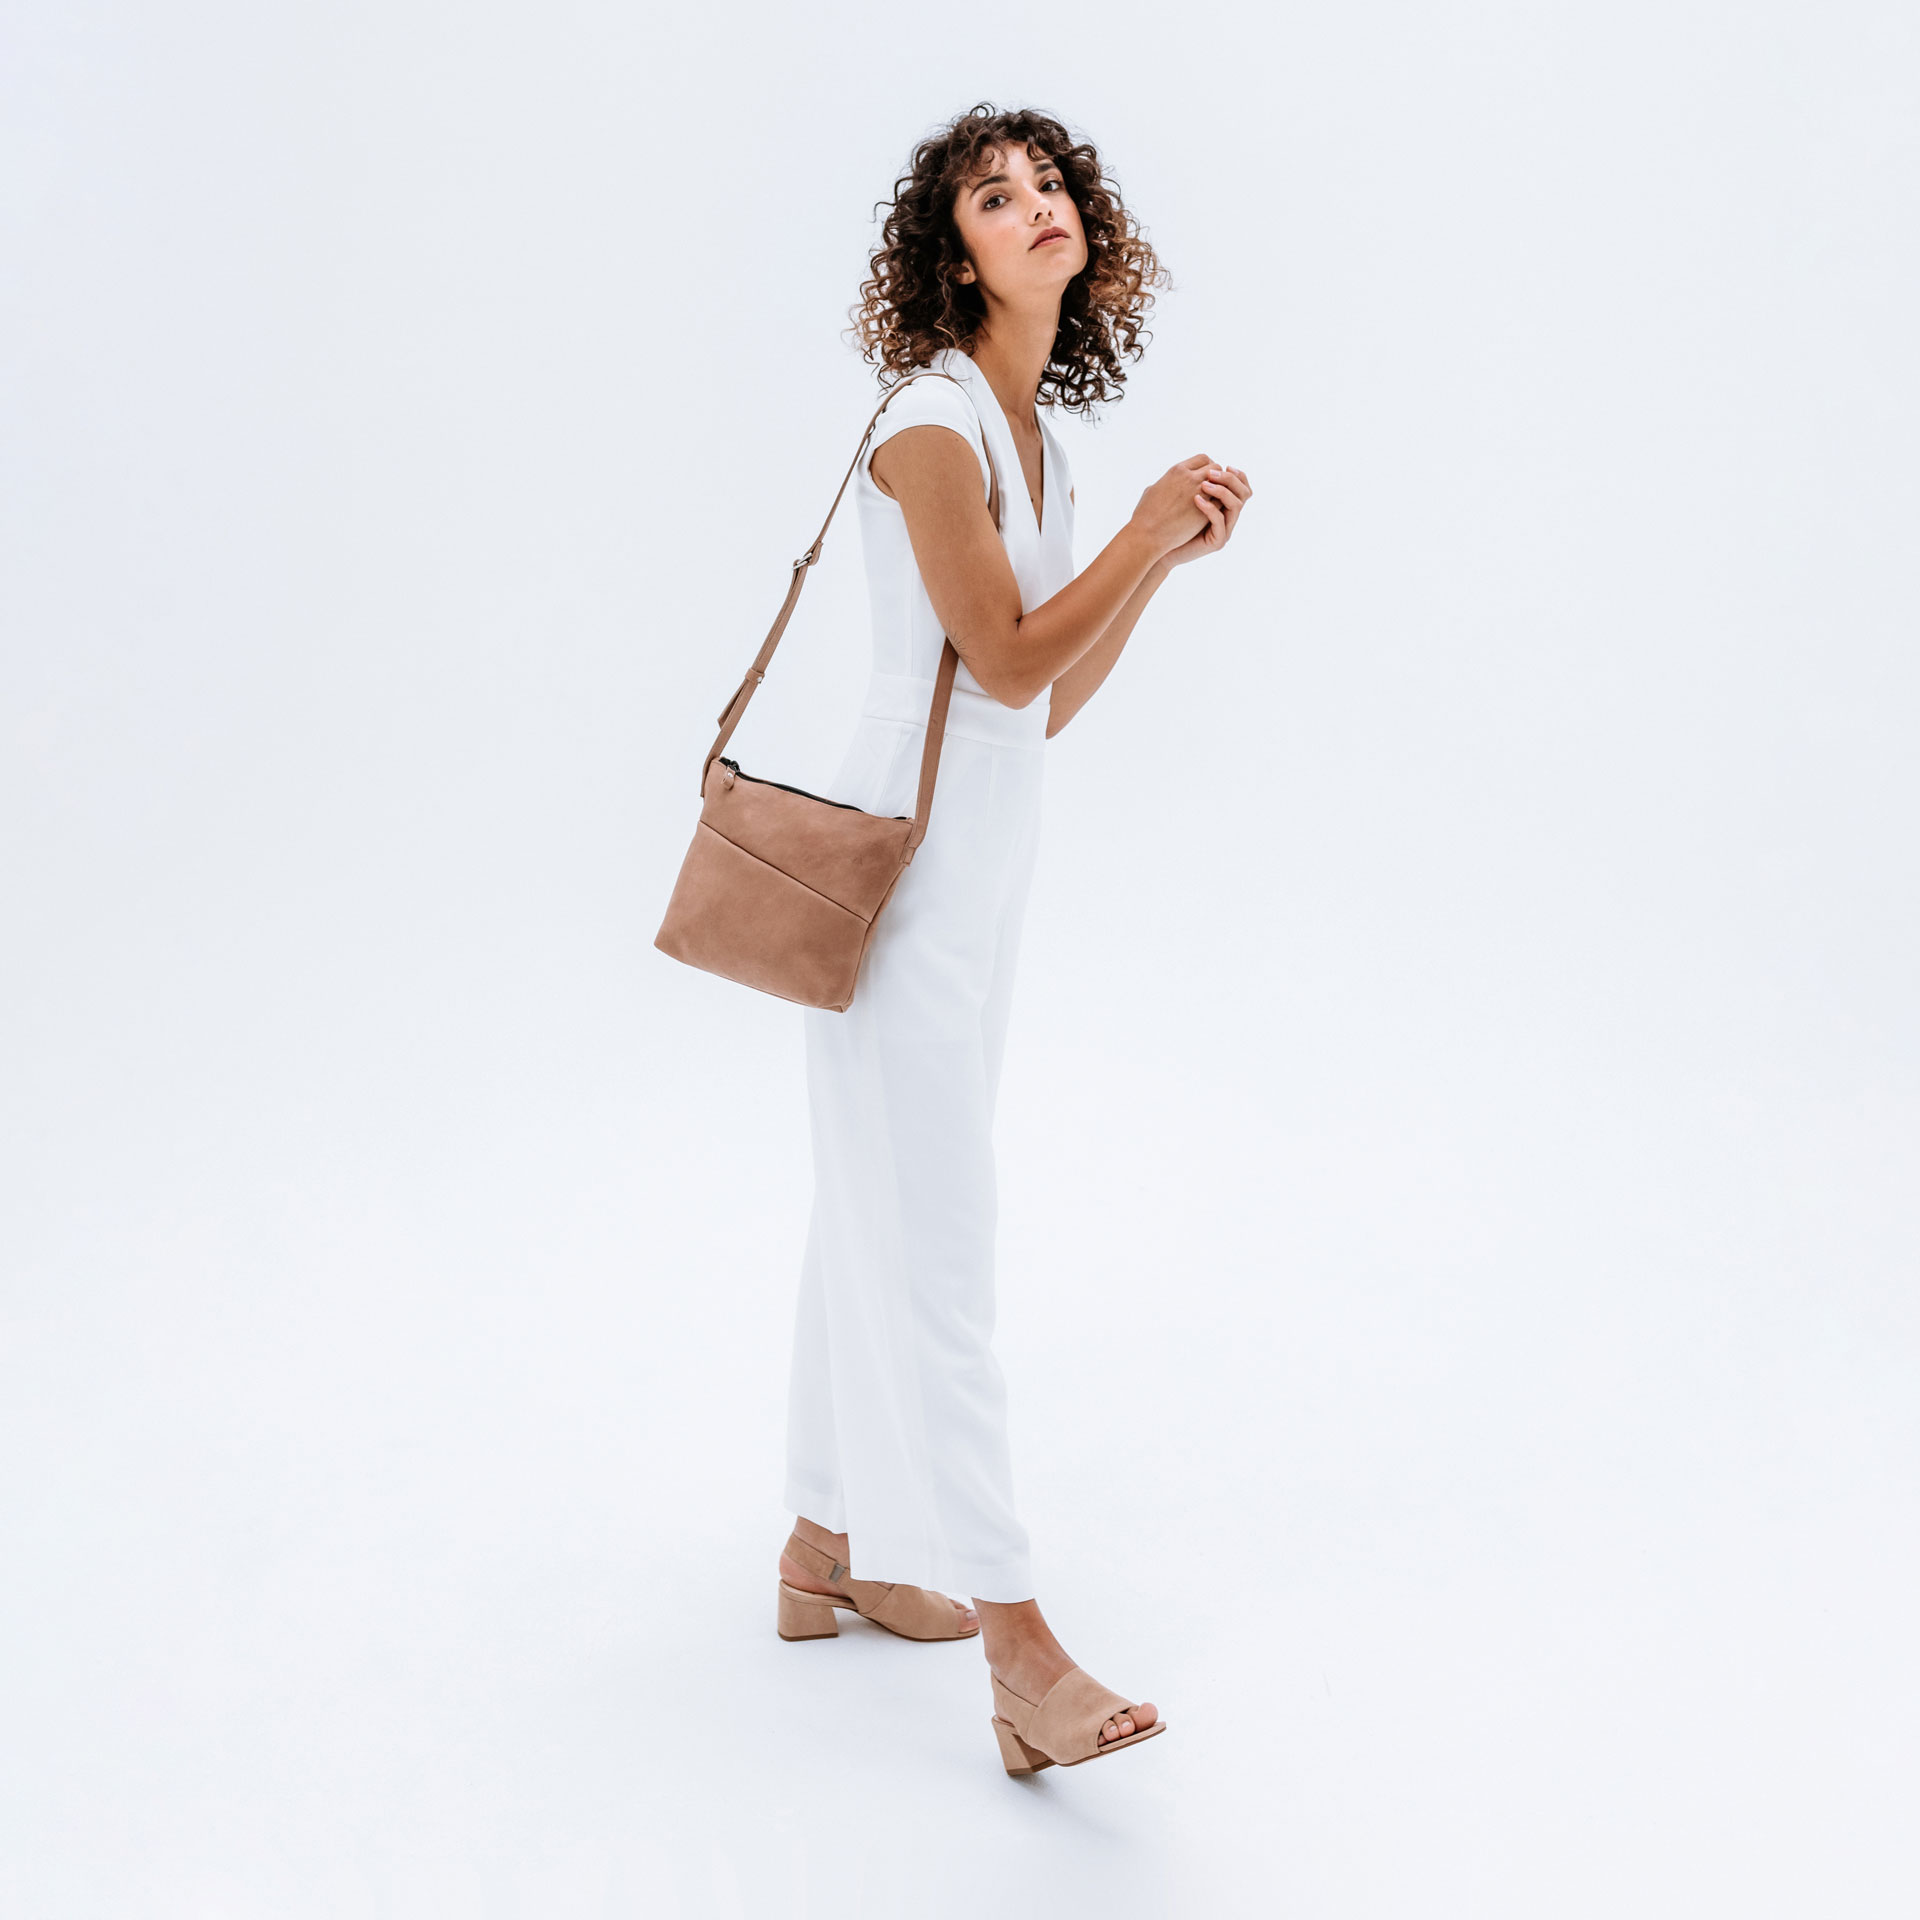 Model wears shoulder bag Ida in light brown color made of natural leather over the shoulder.